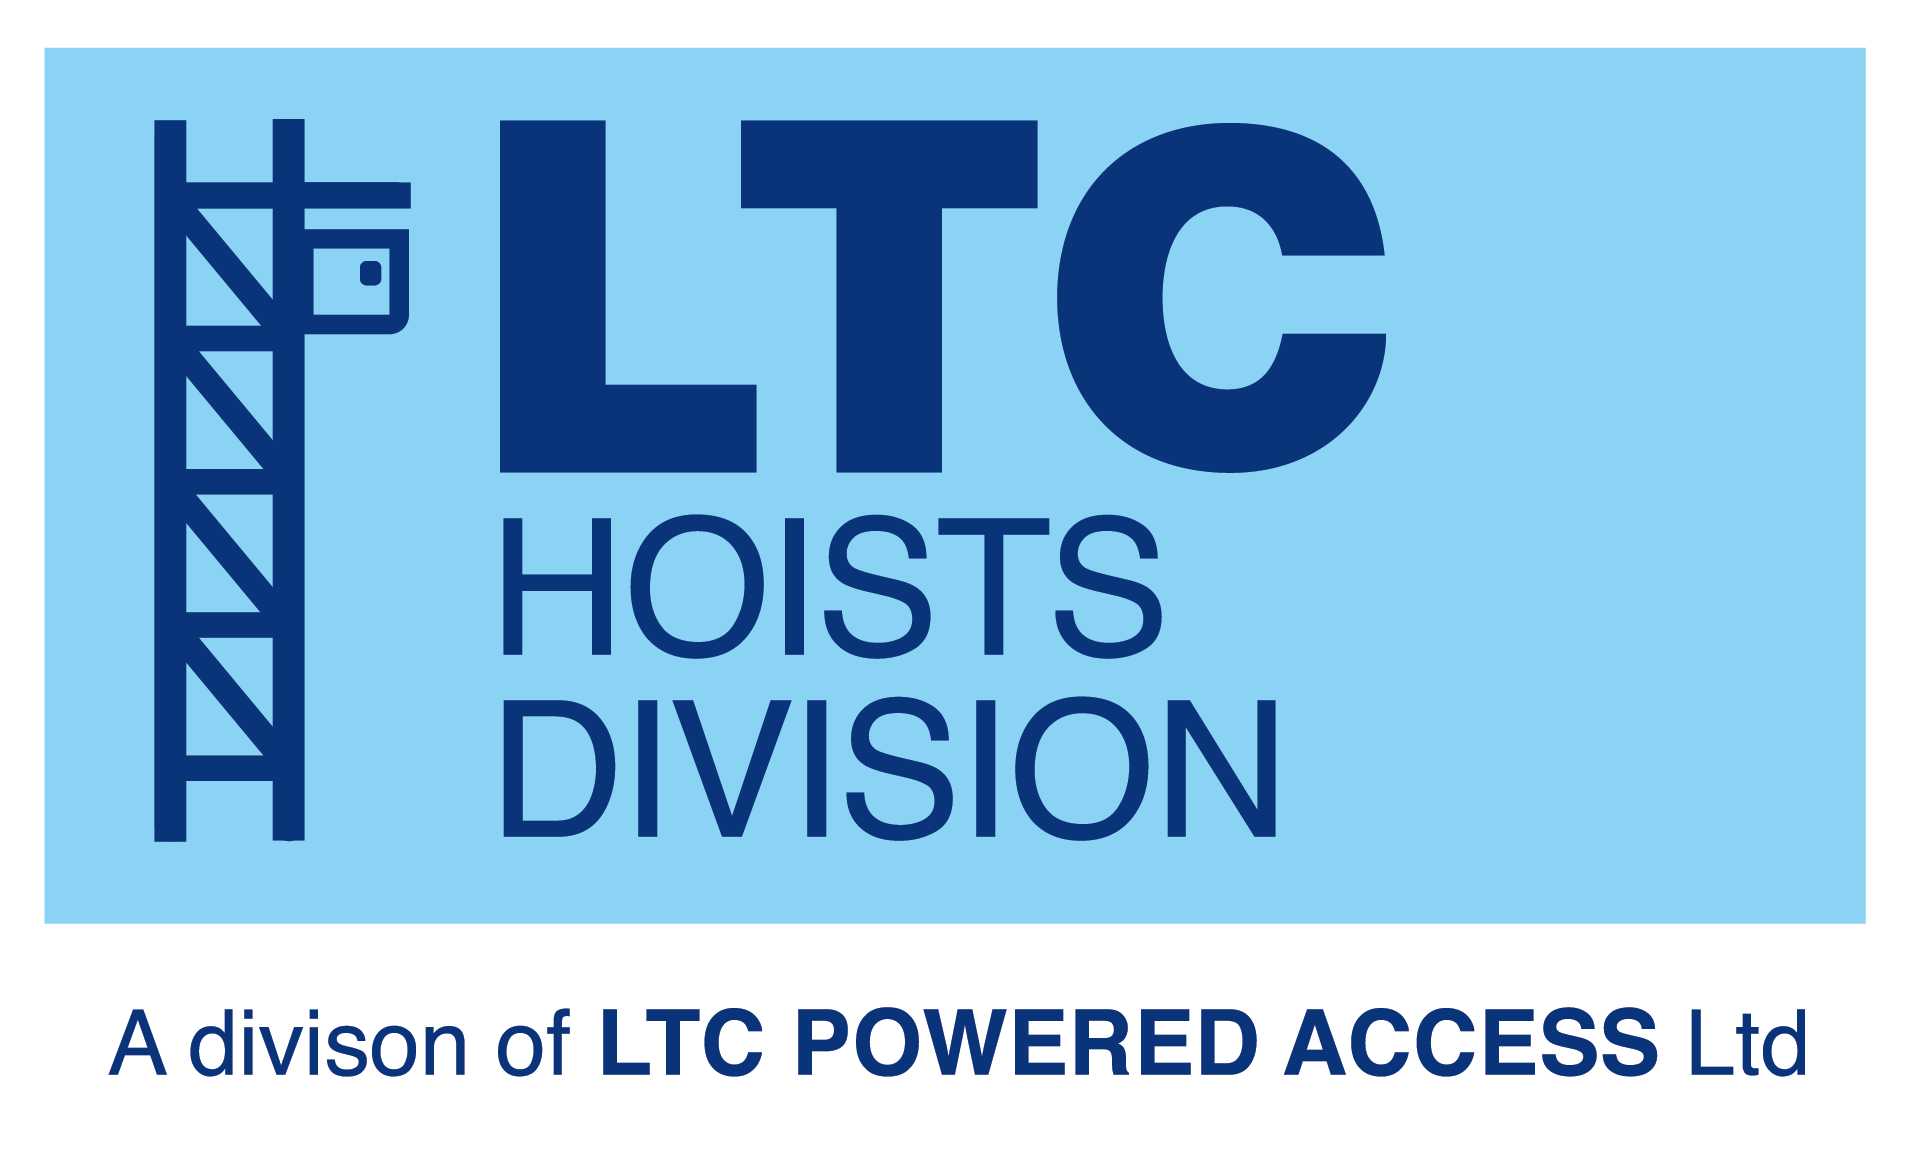 LTC Hoists Division